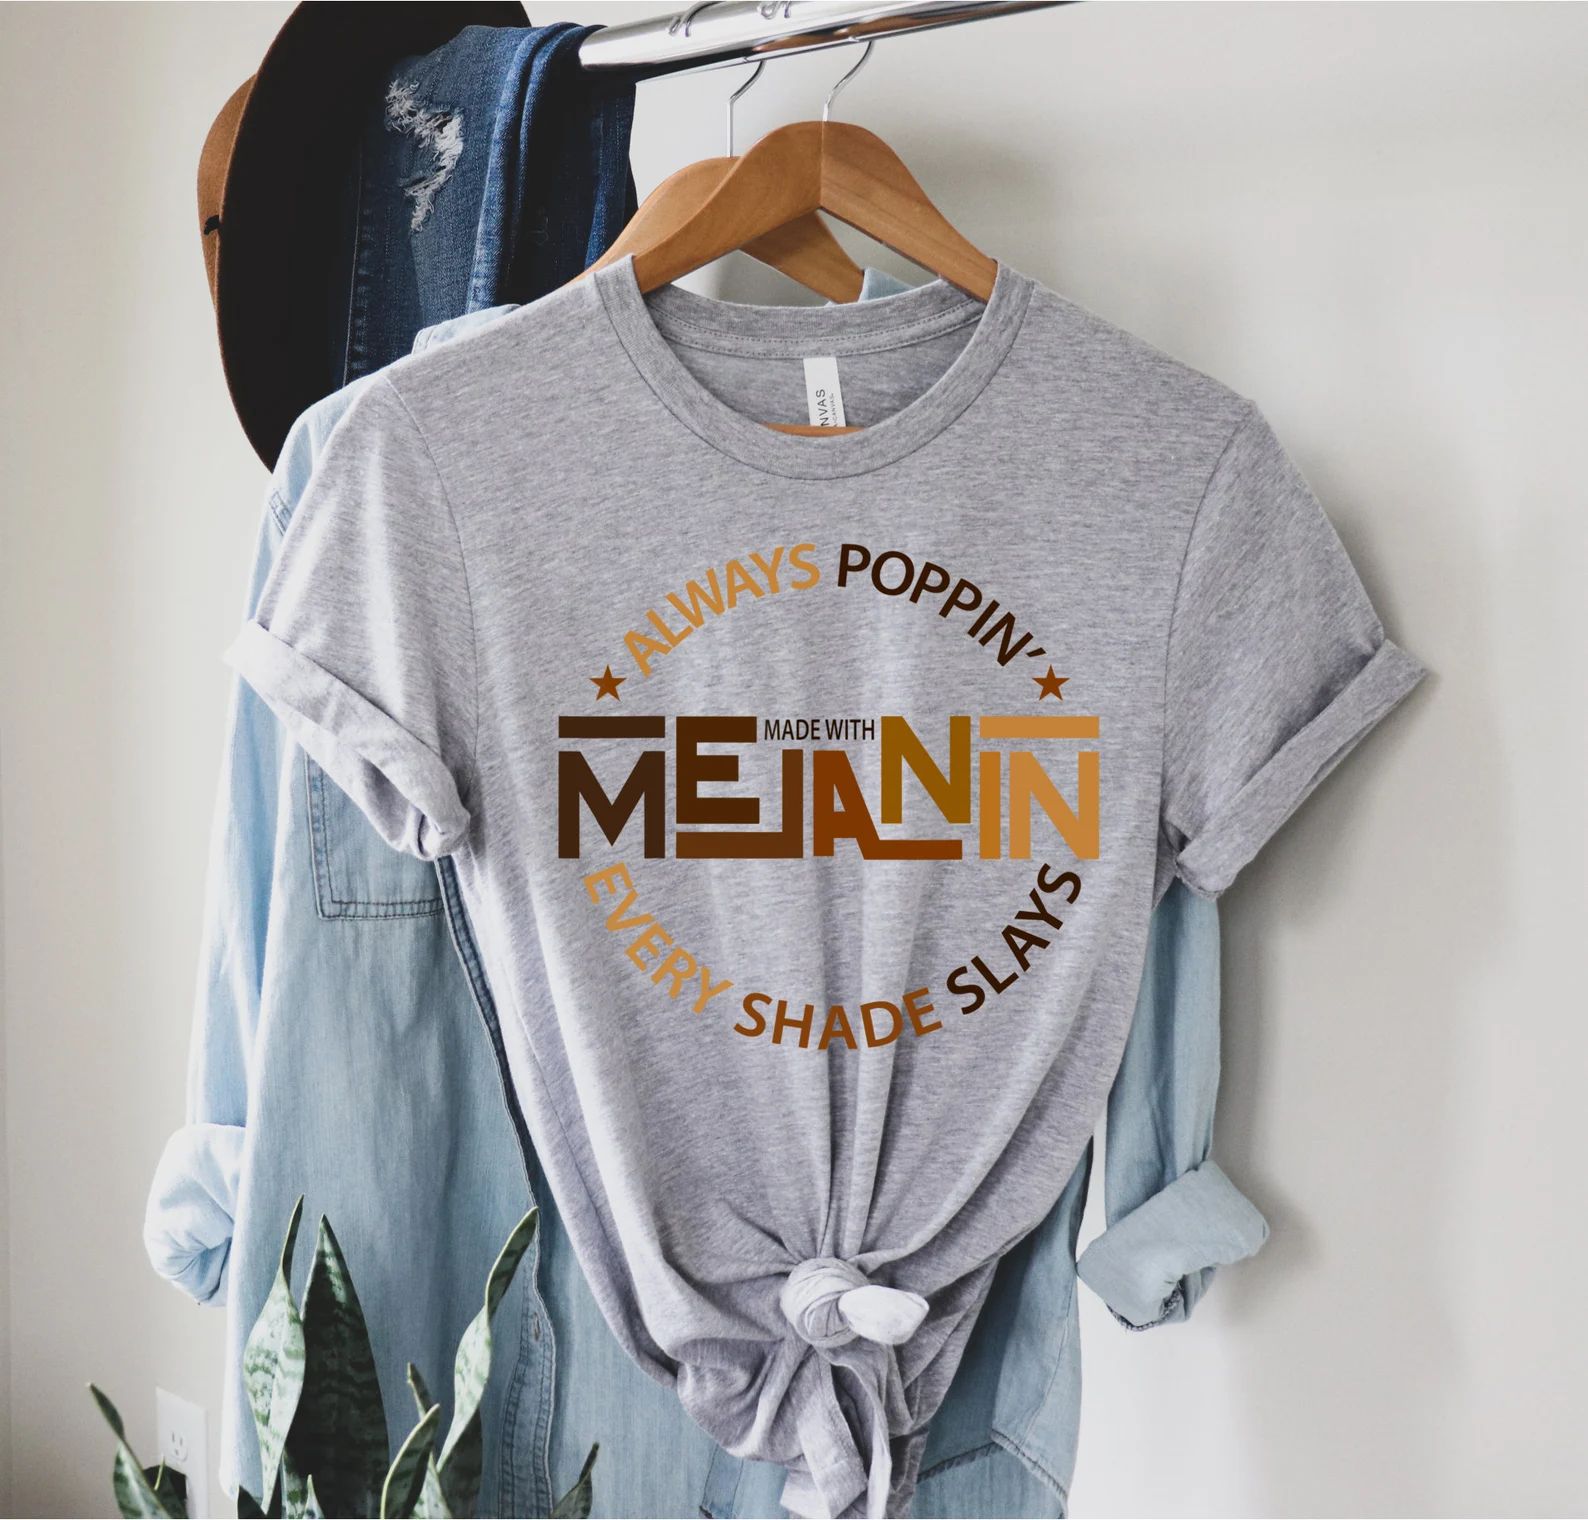 Melanin Shirt, Made With Melanin Always Poppin' Every Shade Slays, Human Rights Shirt, Many Shade... | Etsy (US)